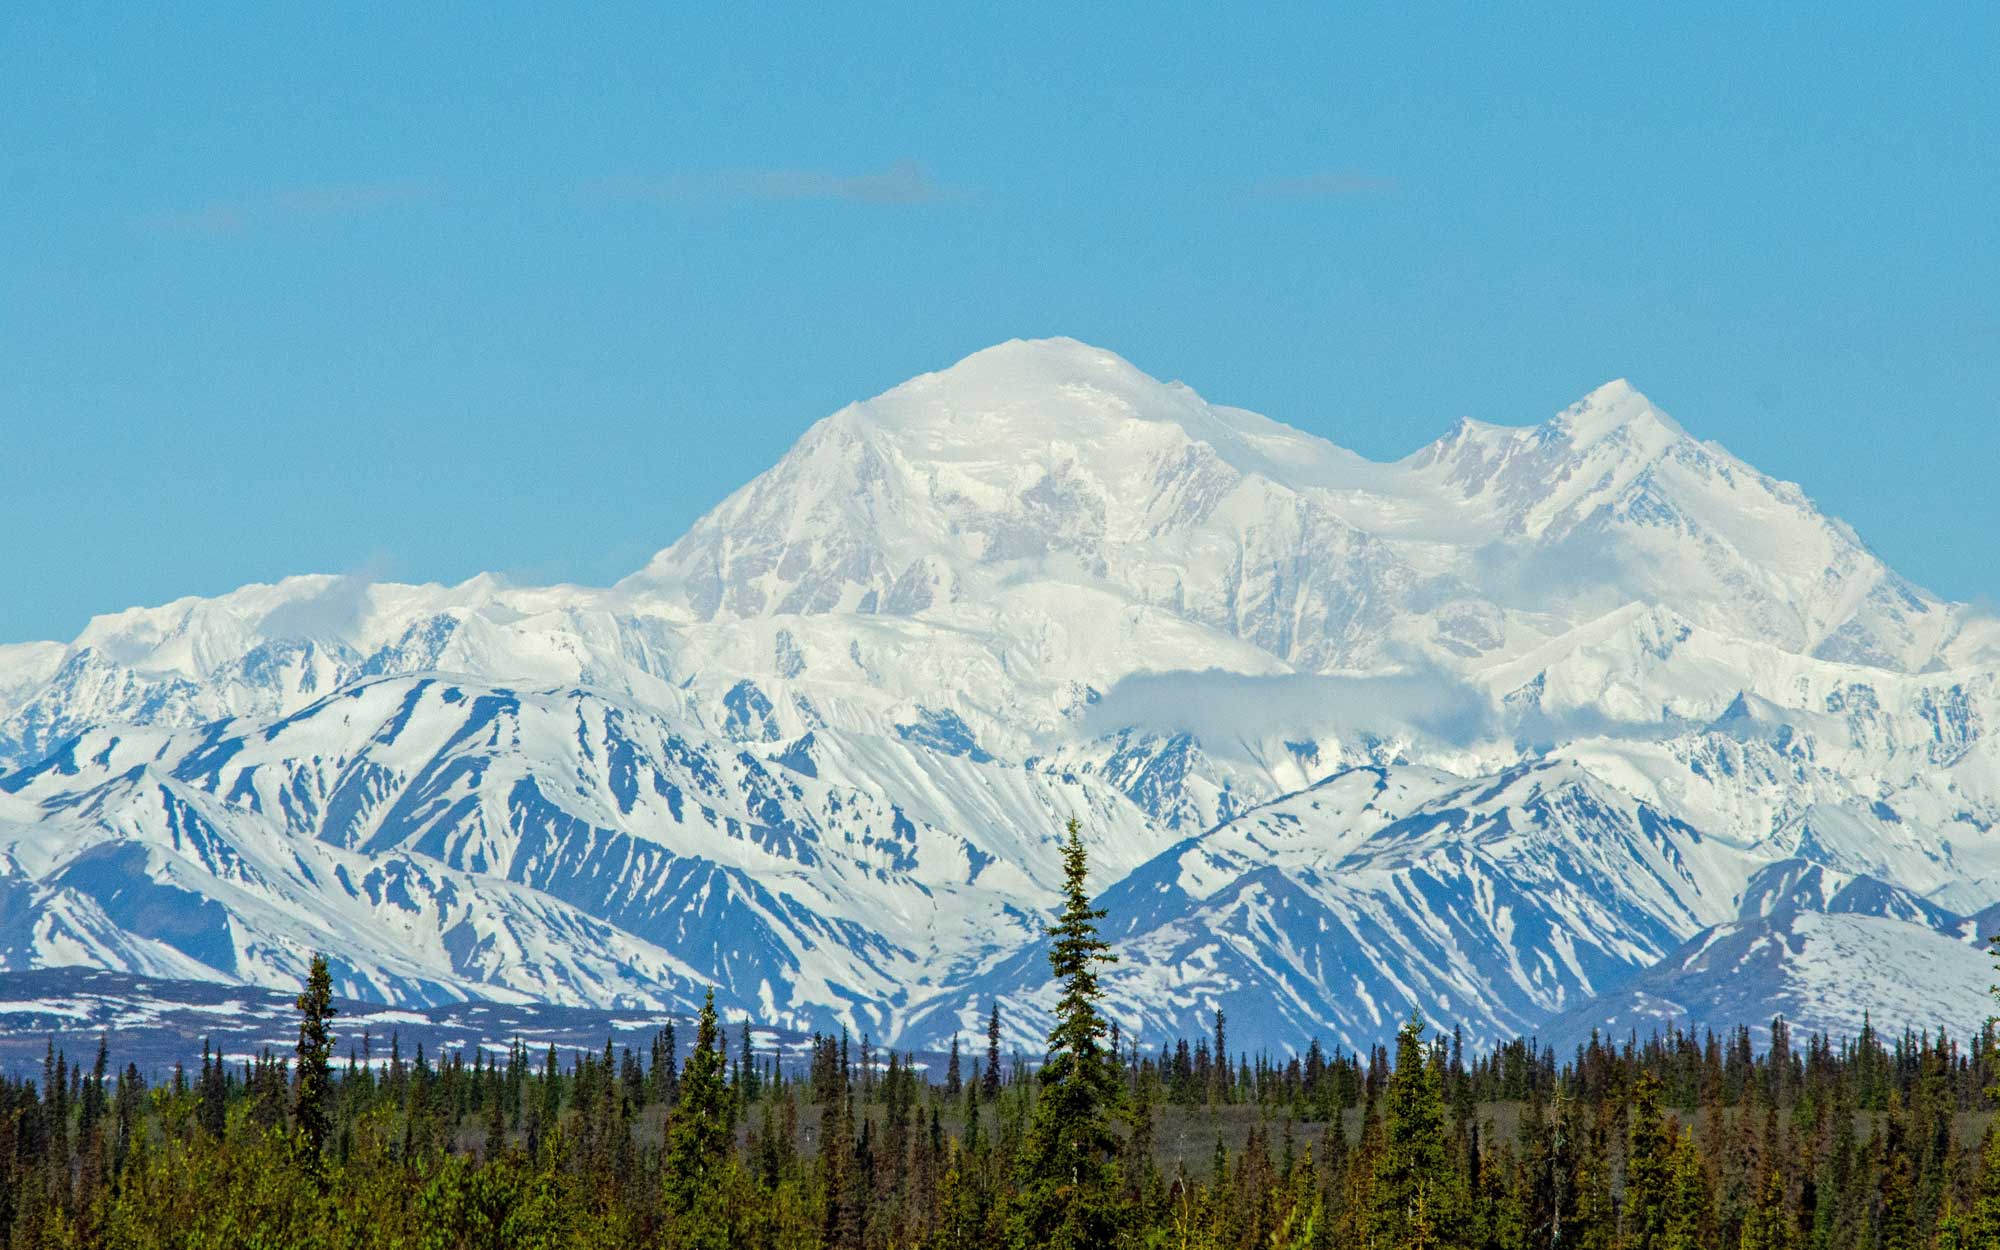 Central Alaska